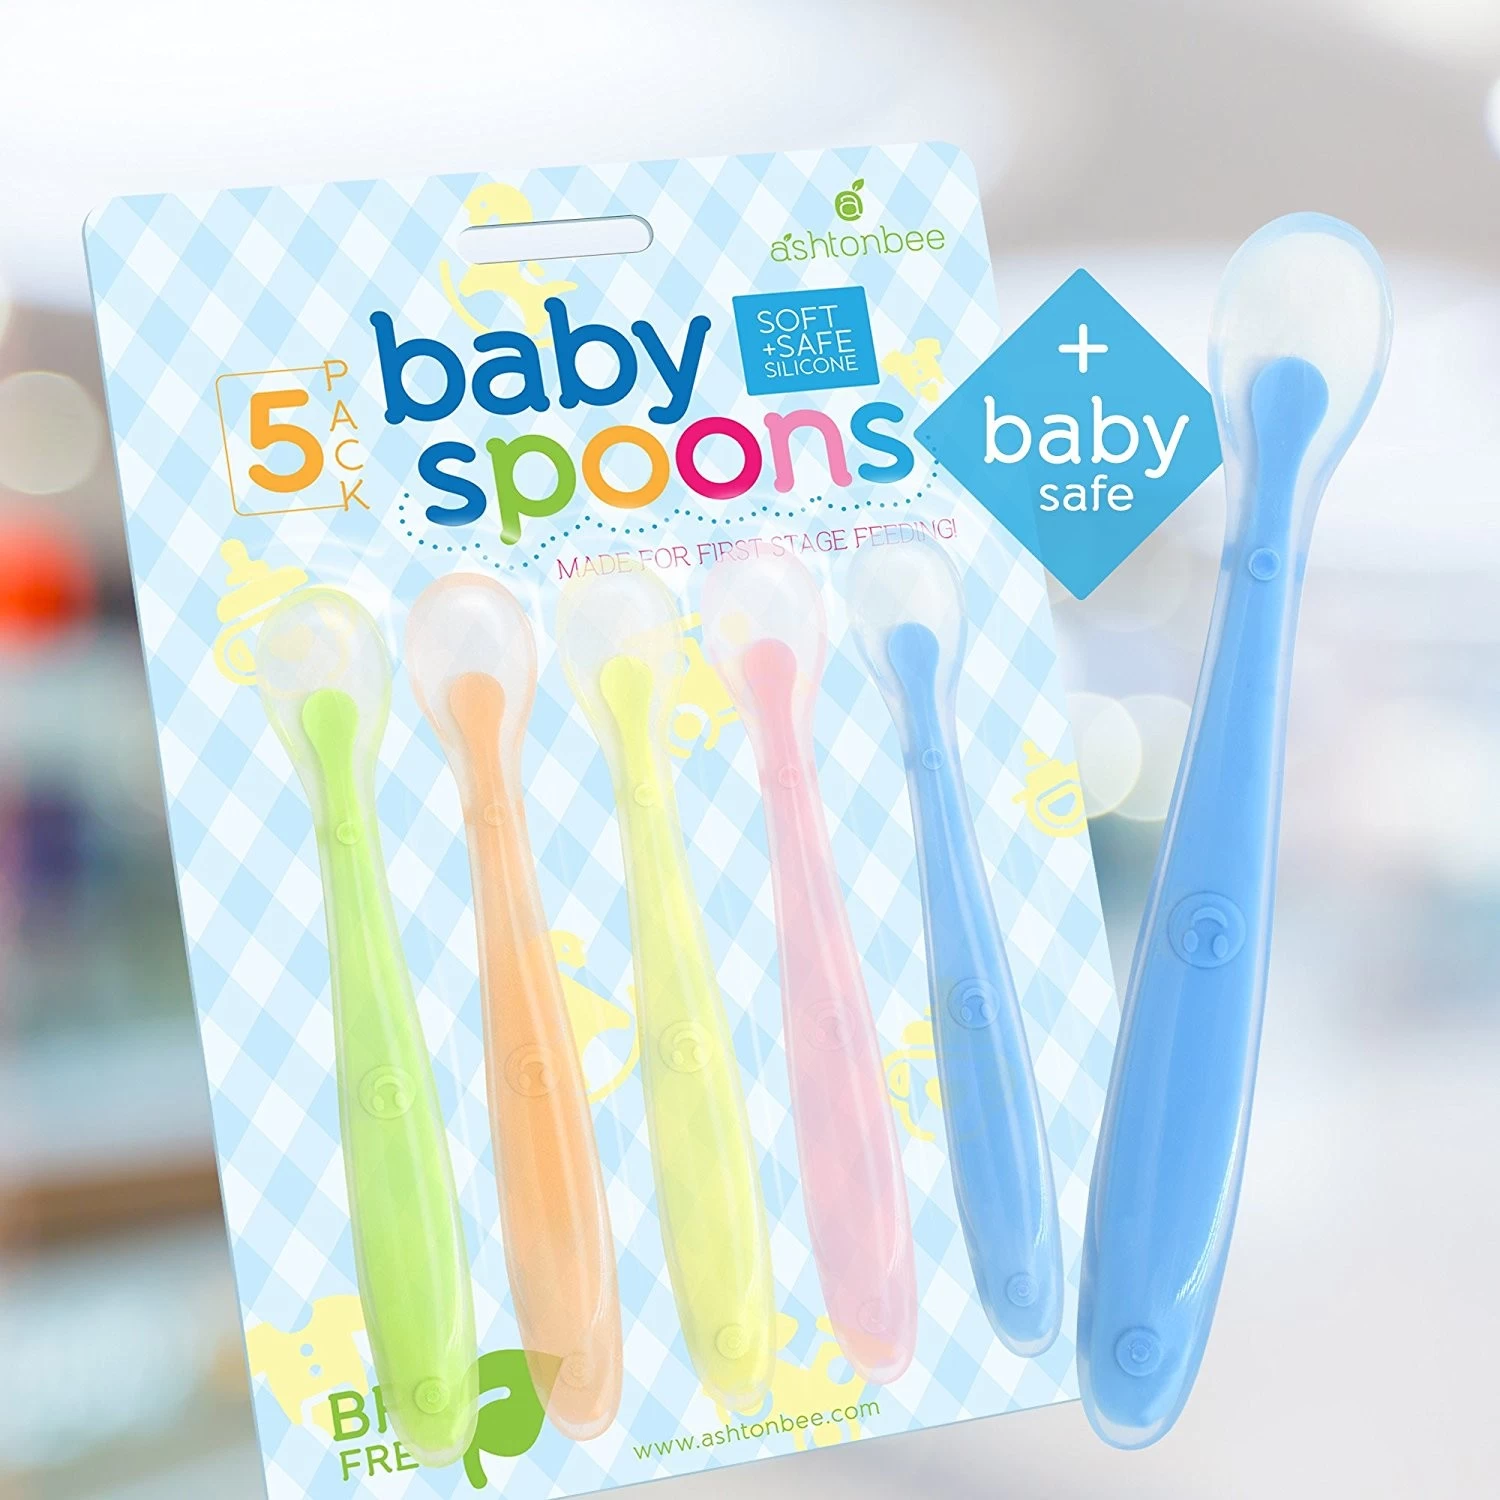 LFGB aprobó la cuchara de alimentación suave del bebé fabricante original